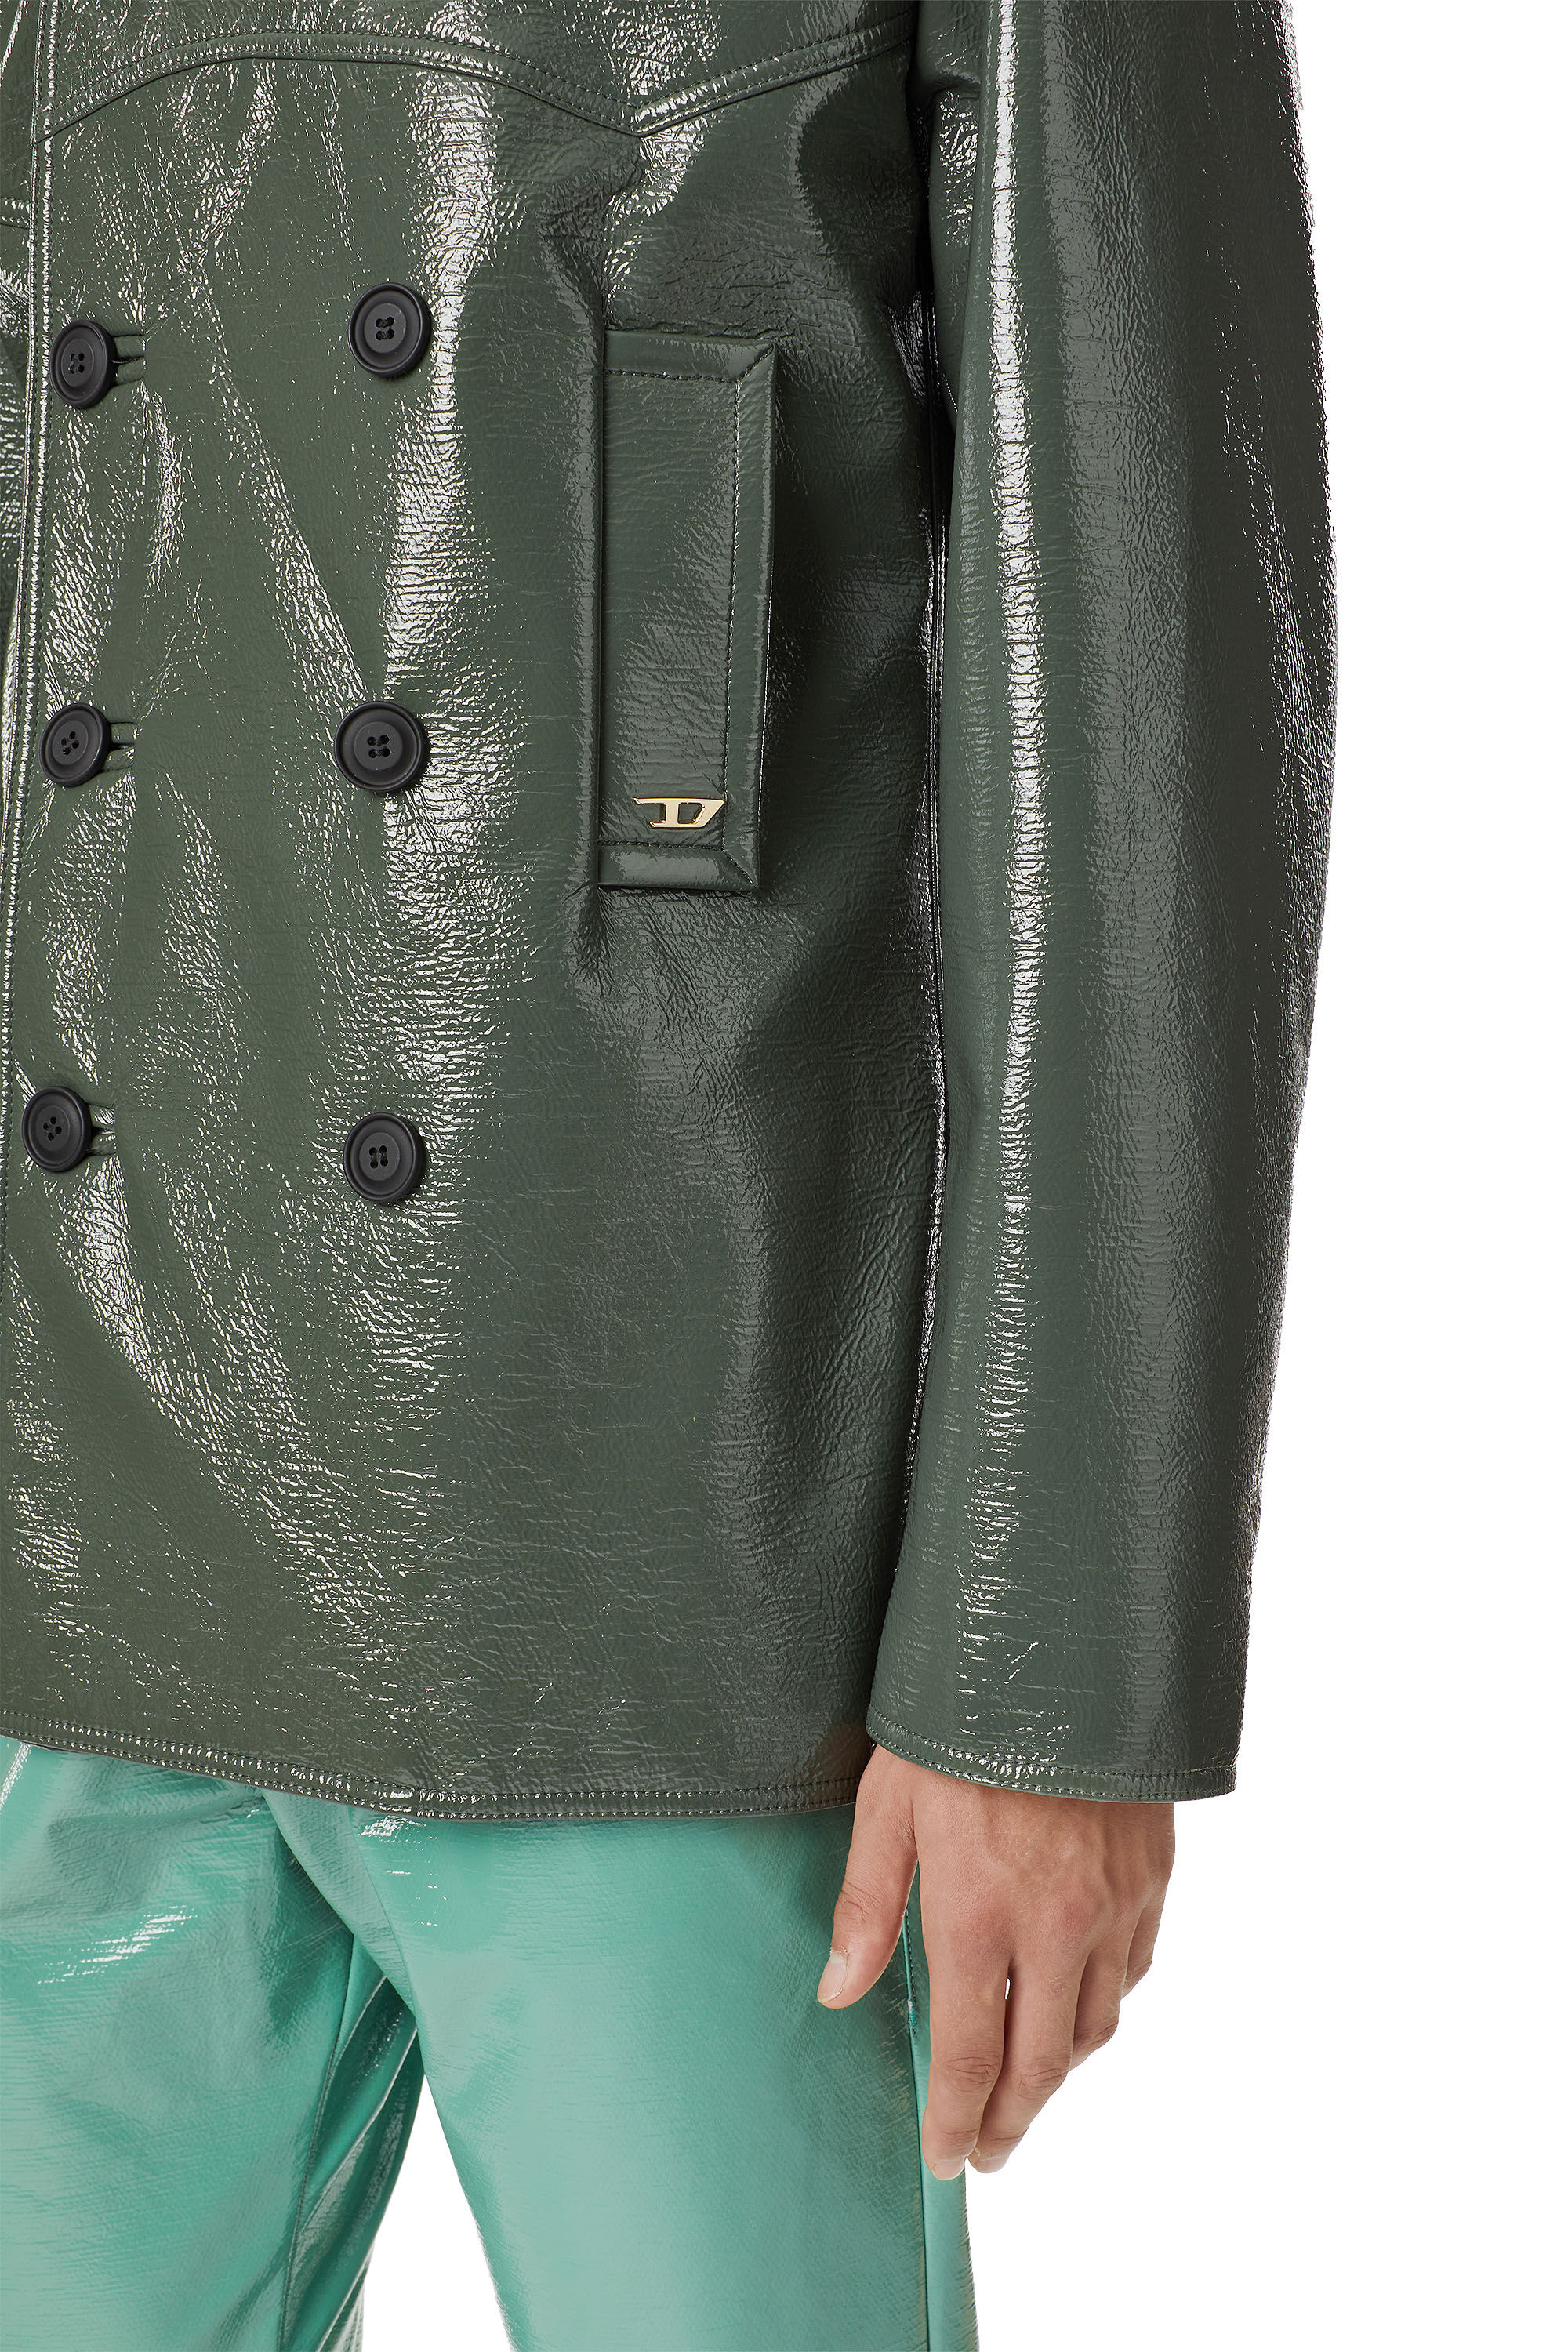 高品質100%新品glamb Raymond leather JKT ll 試着のみ ジャケット・アウター